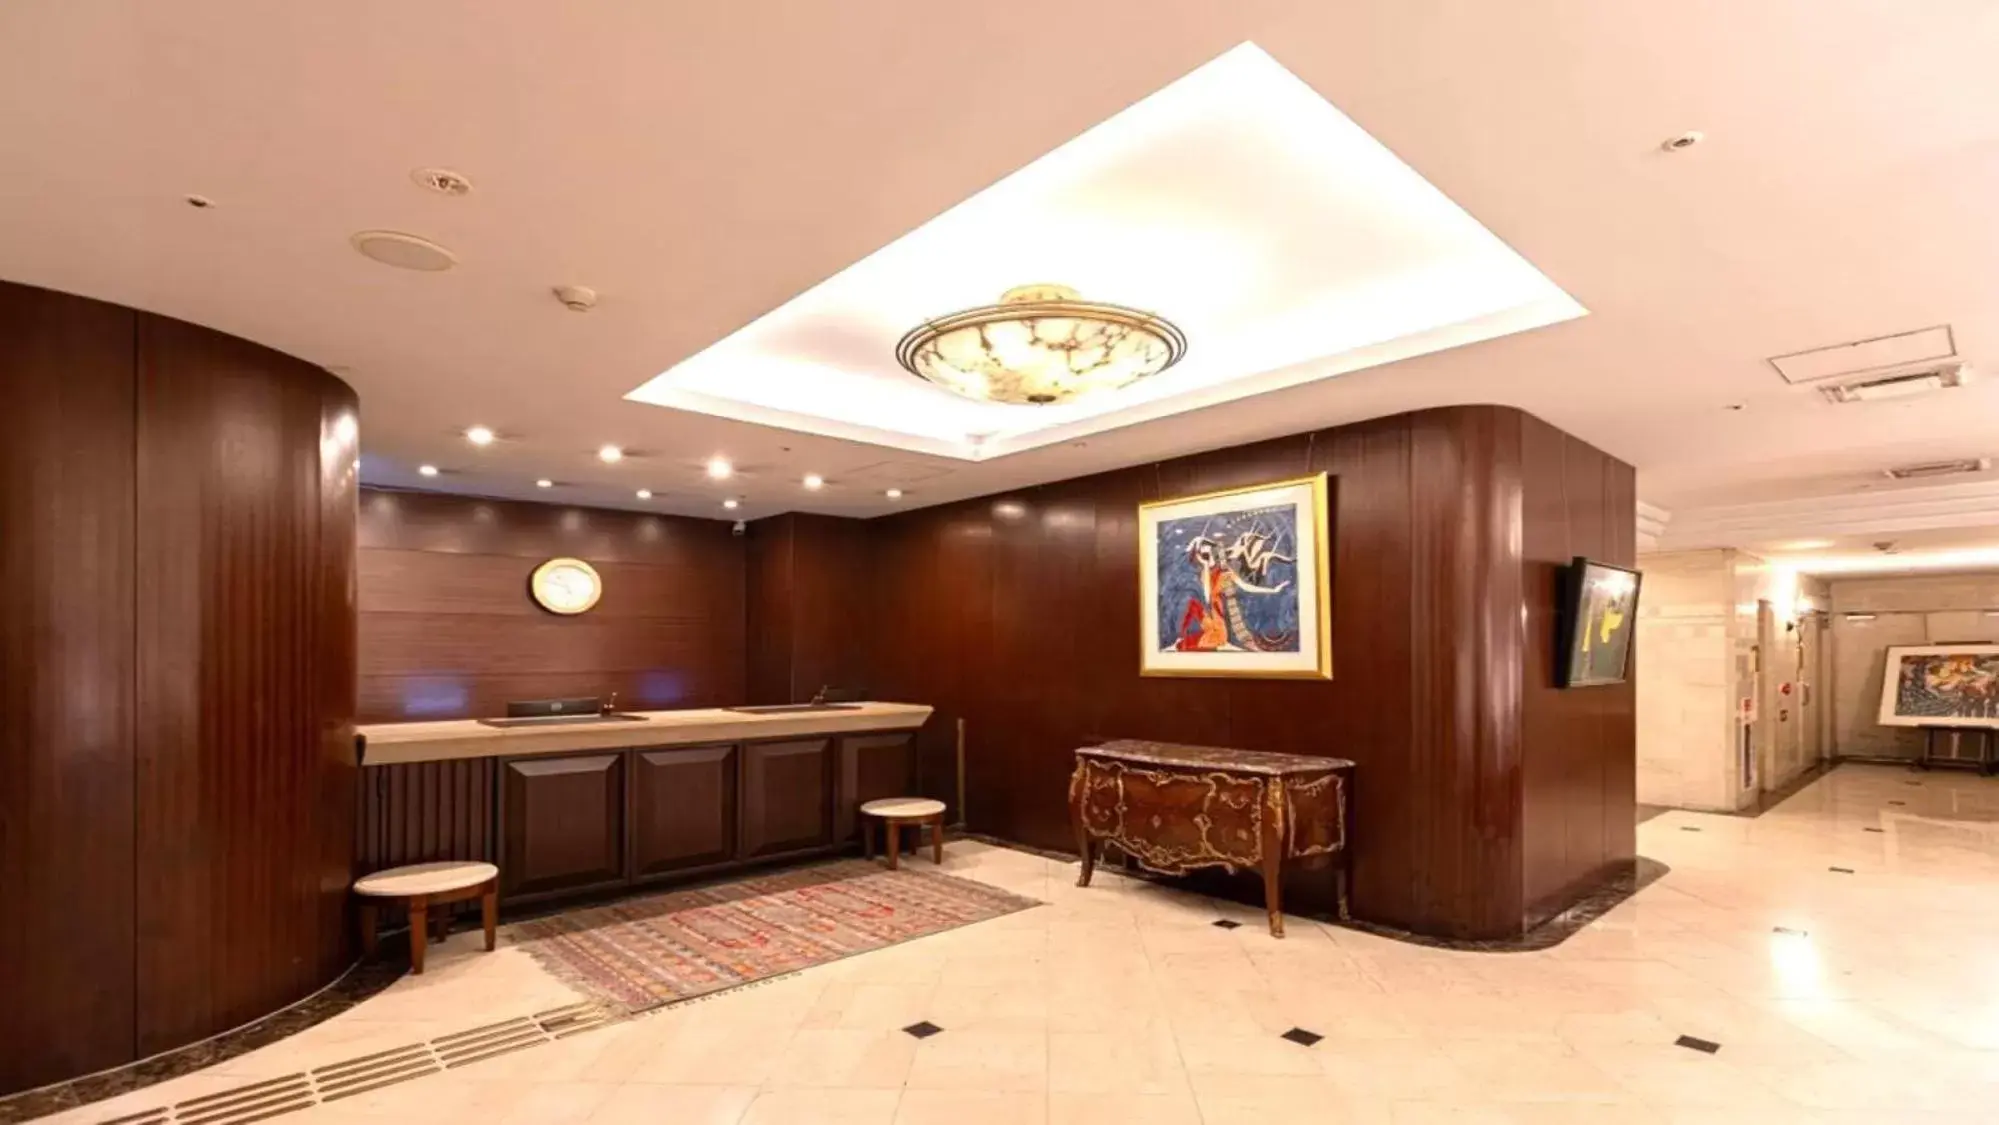 Lobby or reception, Lobby/Reception in New Osaka Hotel Shinsaibashi